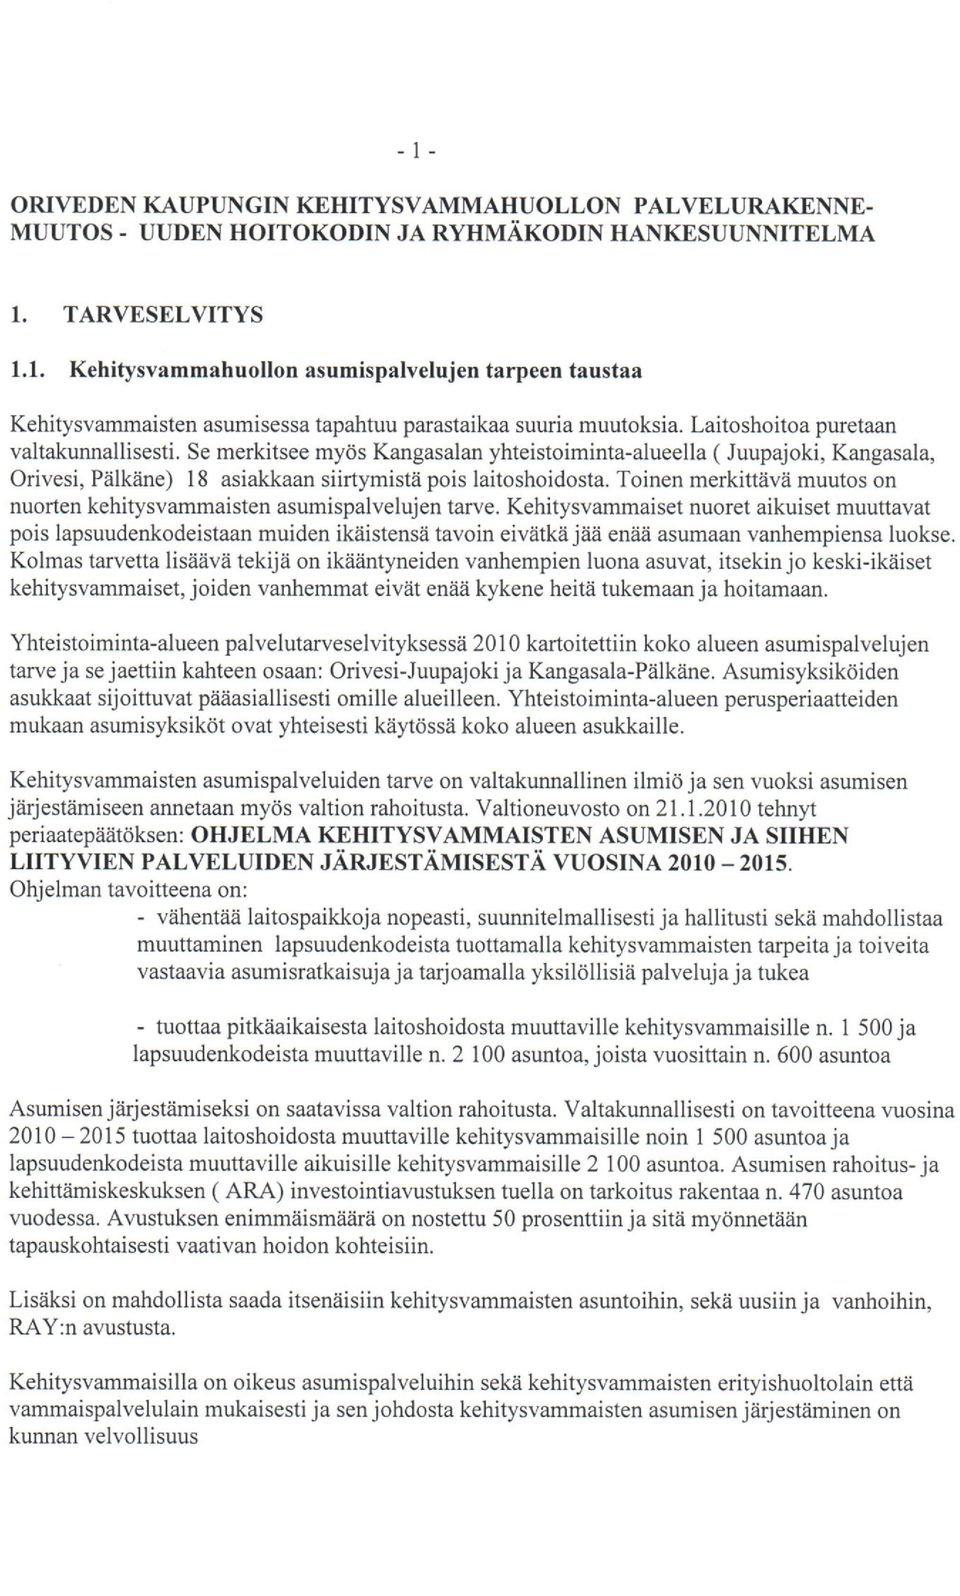 Se merkitsee myds Kangasalan yhteistoiminta-alueella ( Juupajoki, Kangasala, Orivesi, Piilkiine) l8 asiakkaan siirtymistii pois laitoshoidosta.